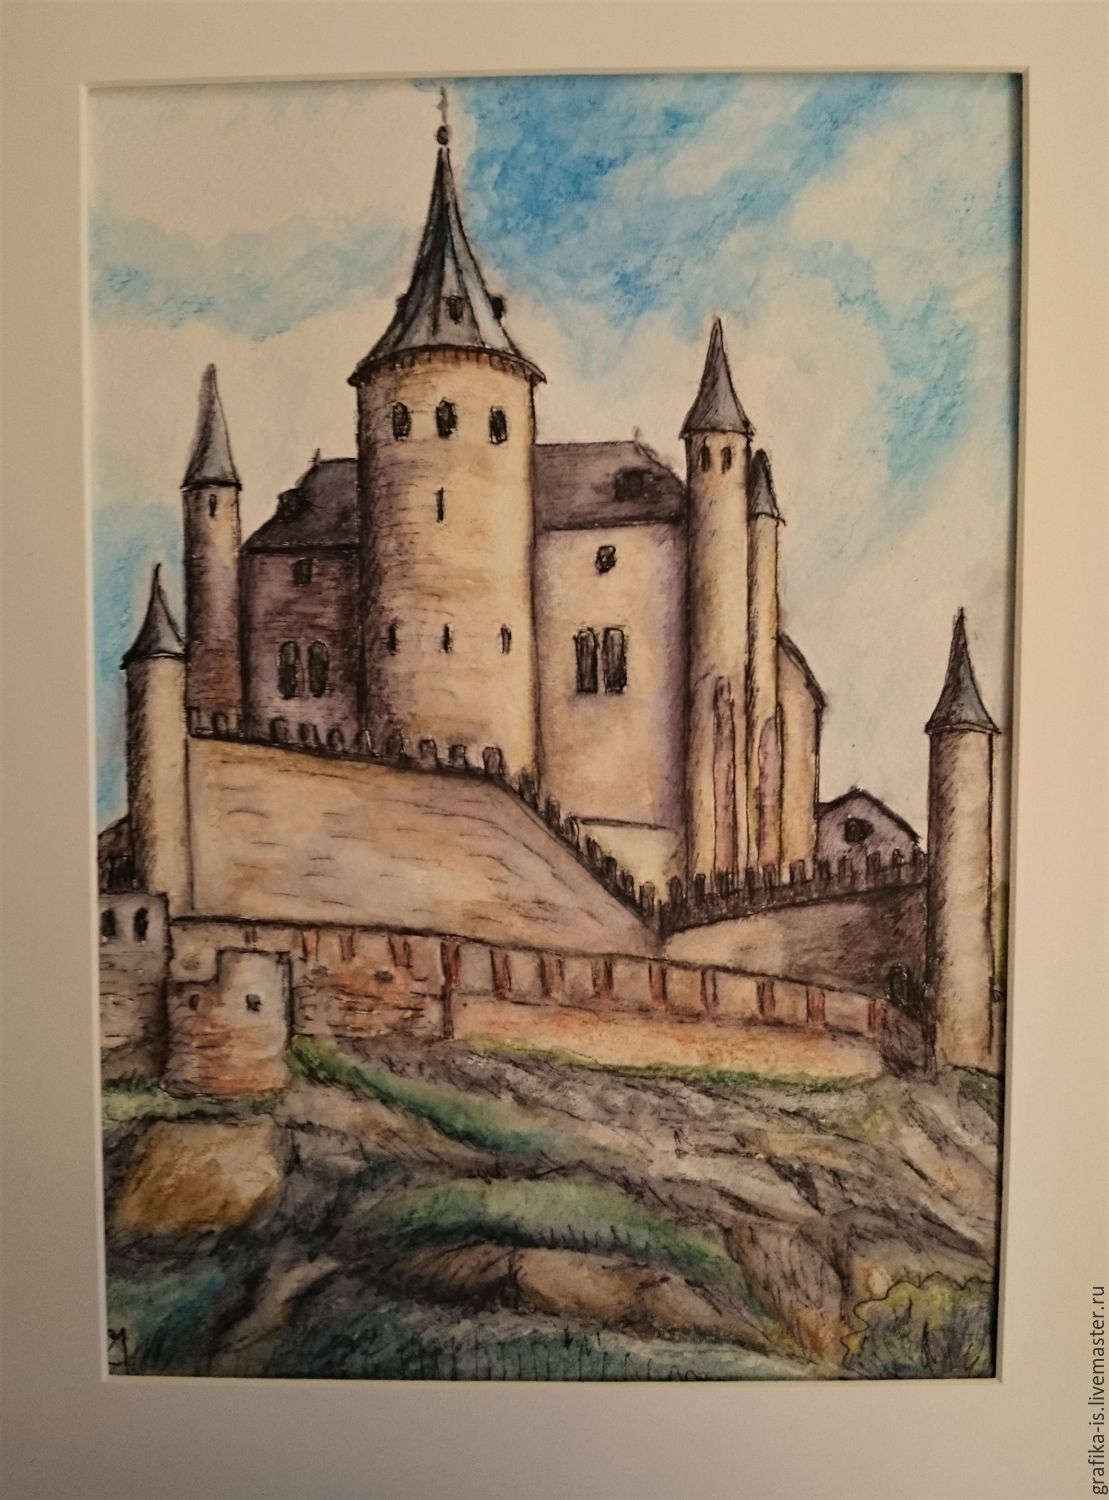 Рисунок старой крепости. Замок Алькасар в романском стиле. Замок в романском стиле рисунок. Романский замок средневековья рисунок. Старый замок рисунок.